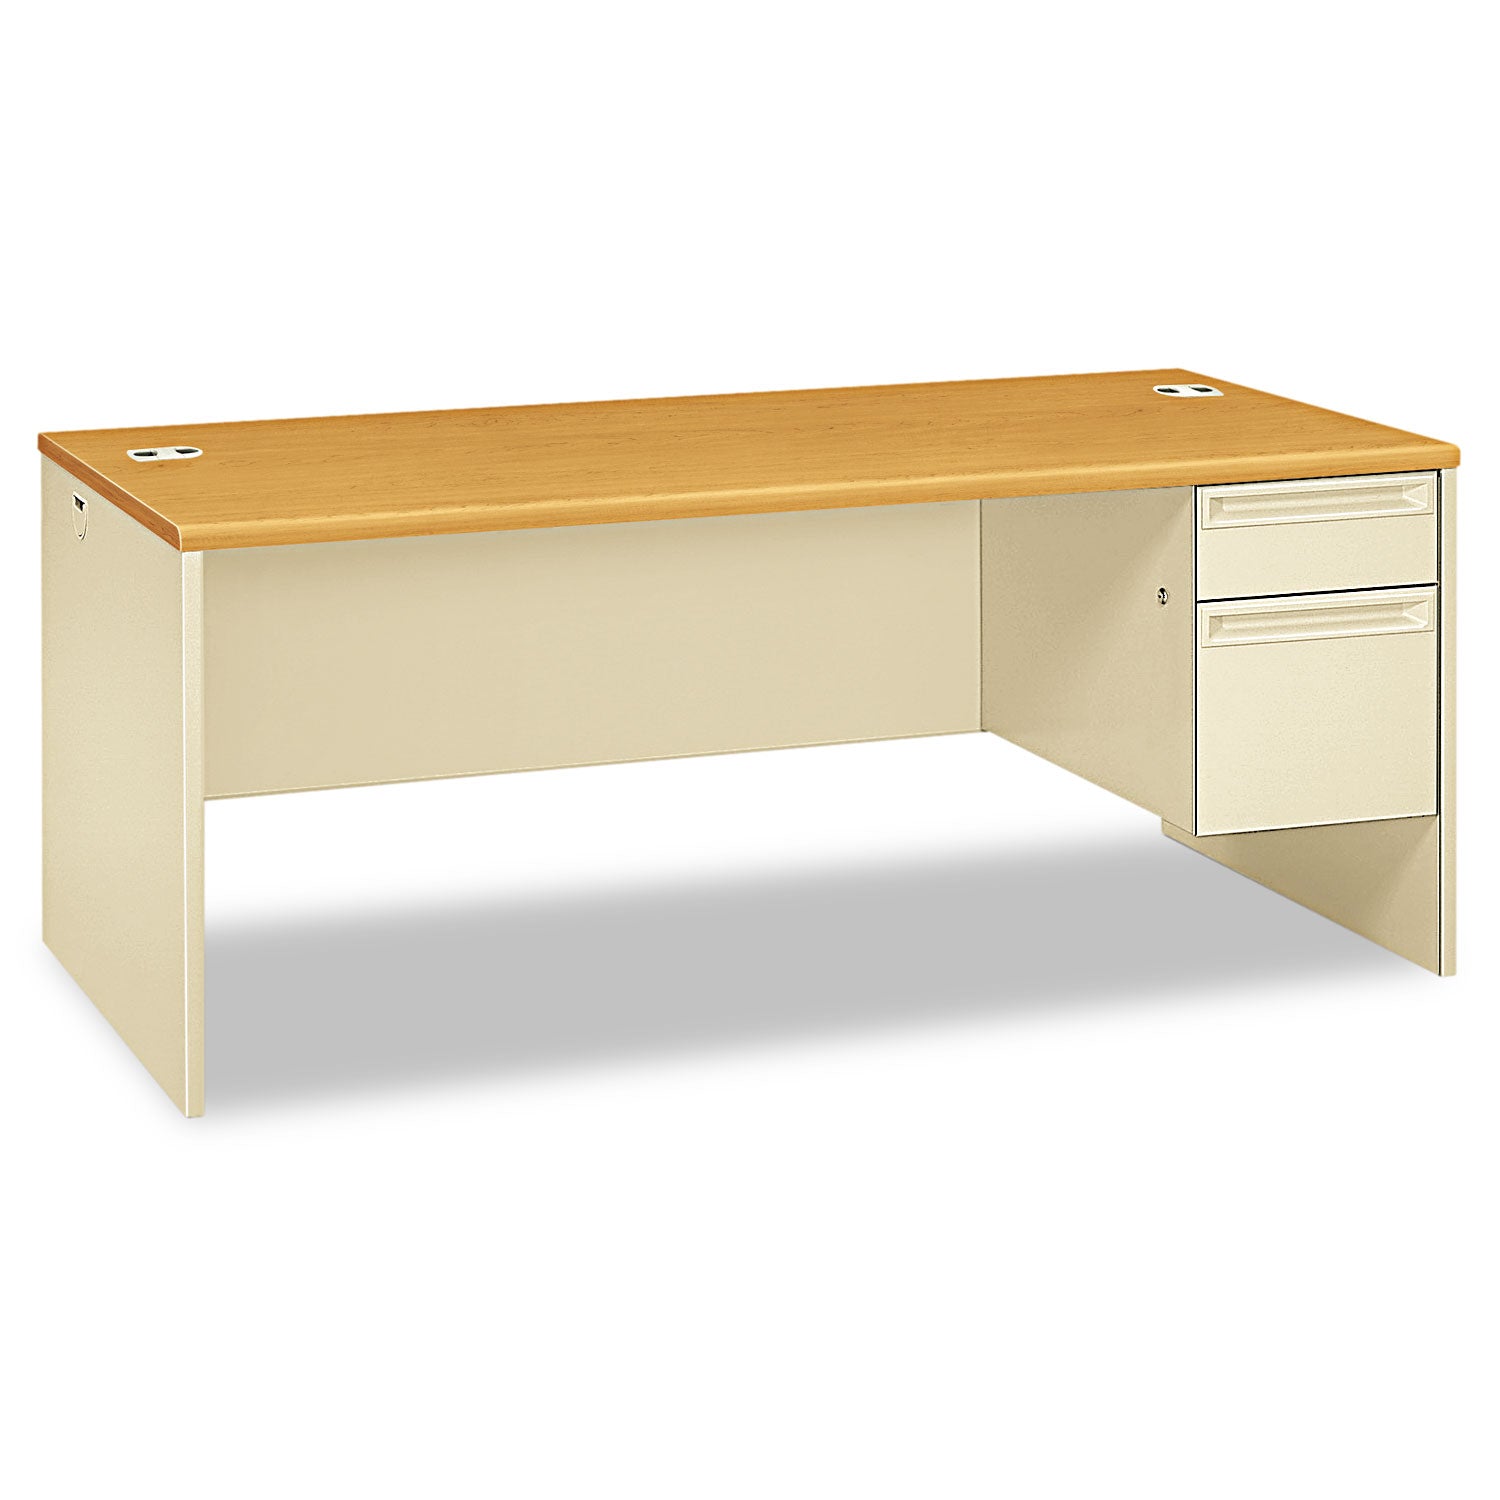 38000 Series Right Pedestal Desk, 72" x 36" x 29.5", Harvest/Putty - 